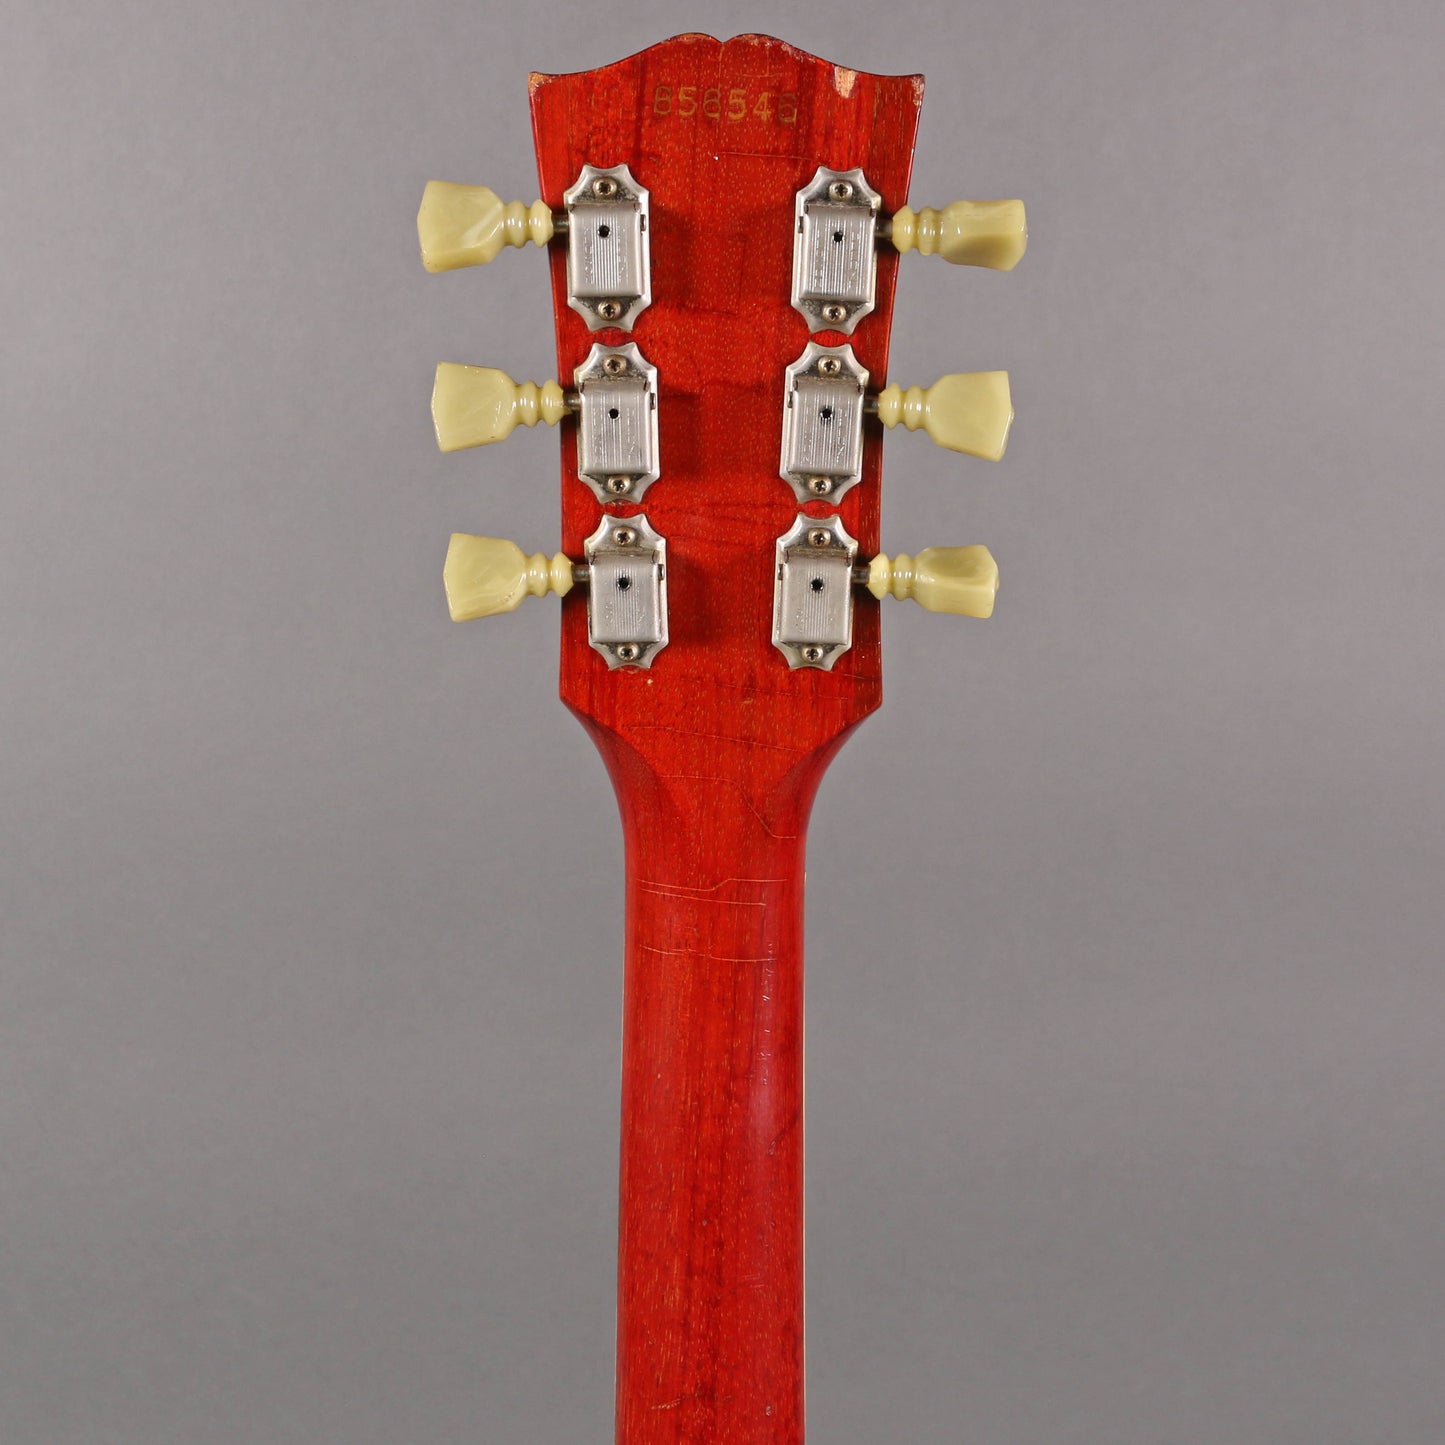 1966 Gibson ES-335TD